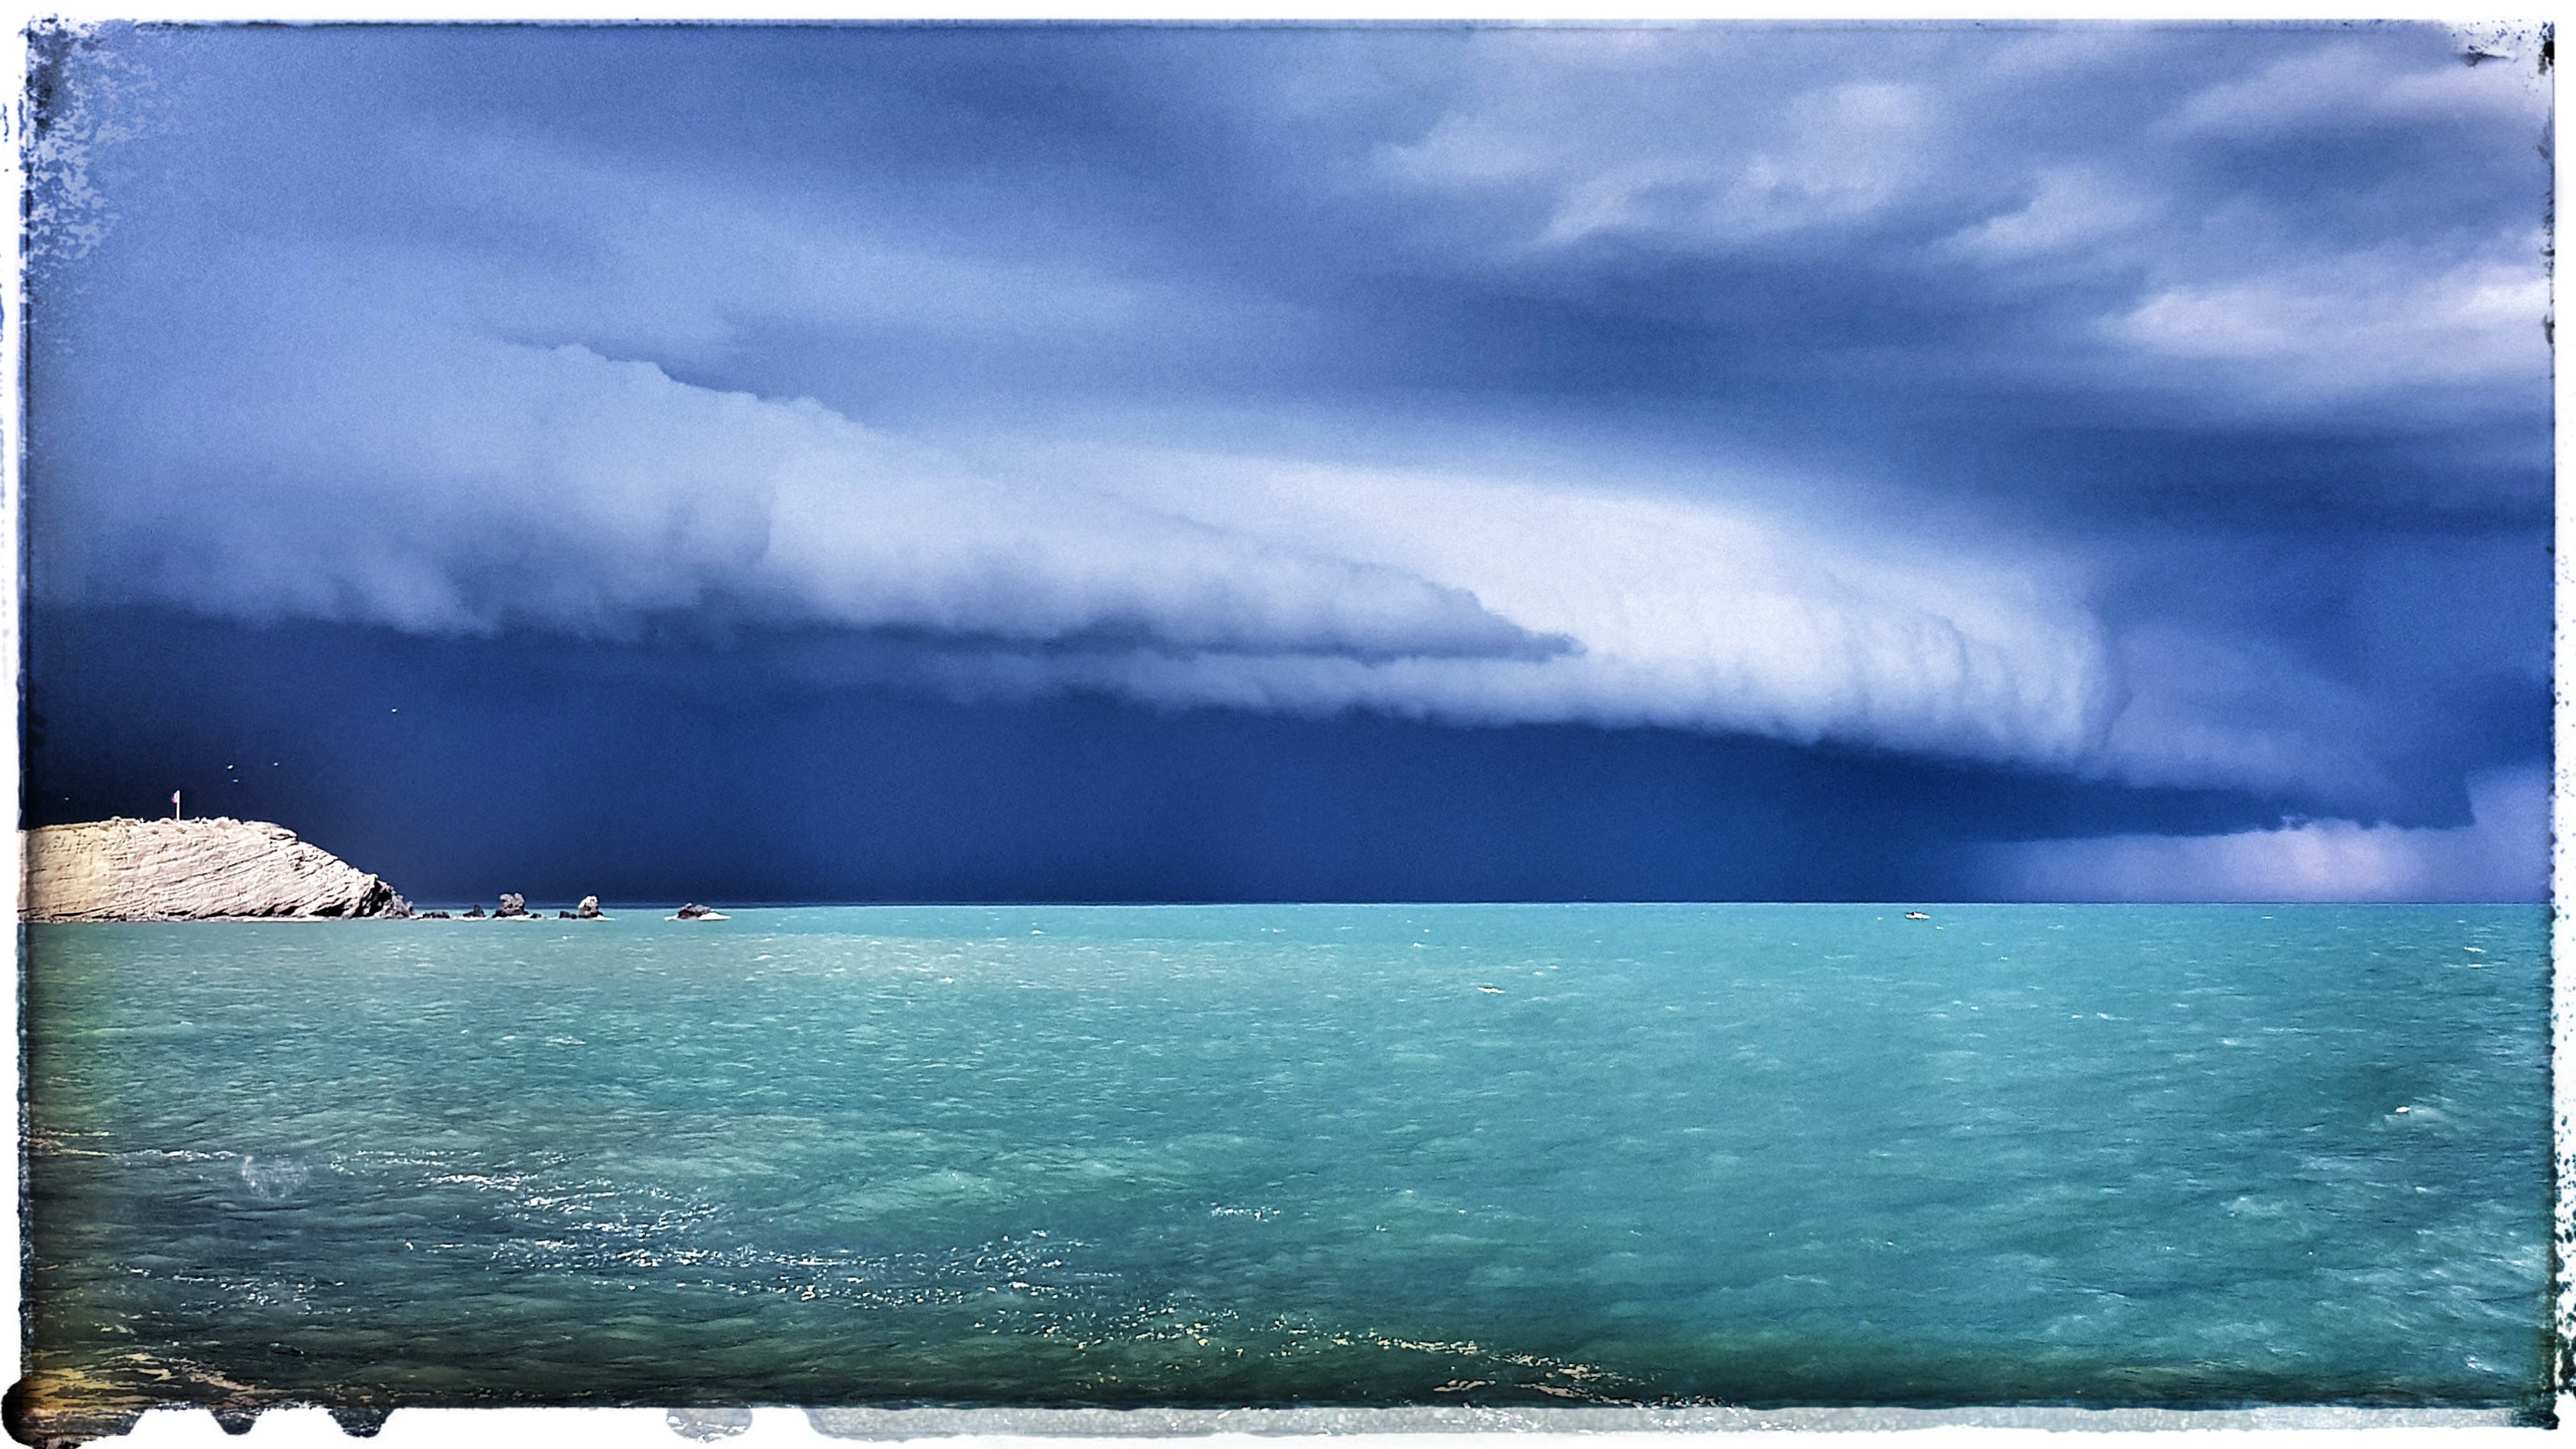 Cellule orageuse au-dessus du Cap d'Agde - 07/04/2019 17:10 - Olivier DETAMBEL